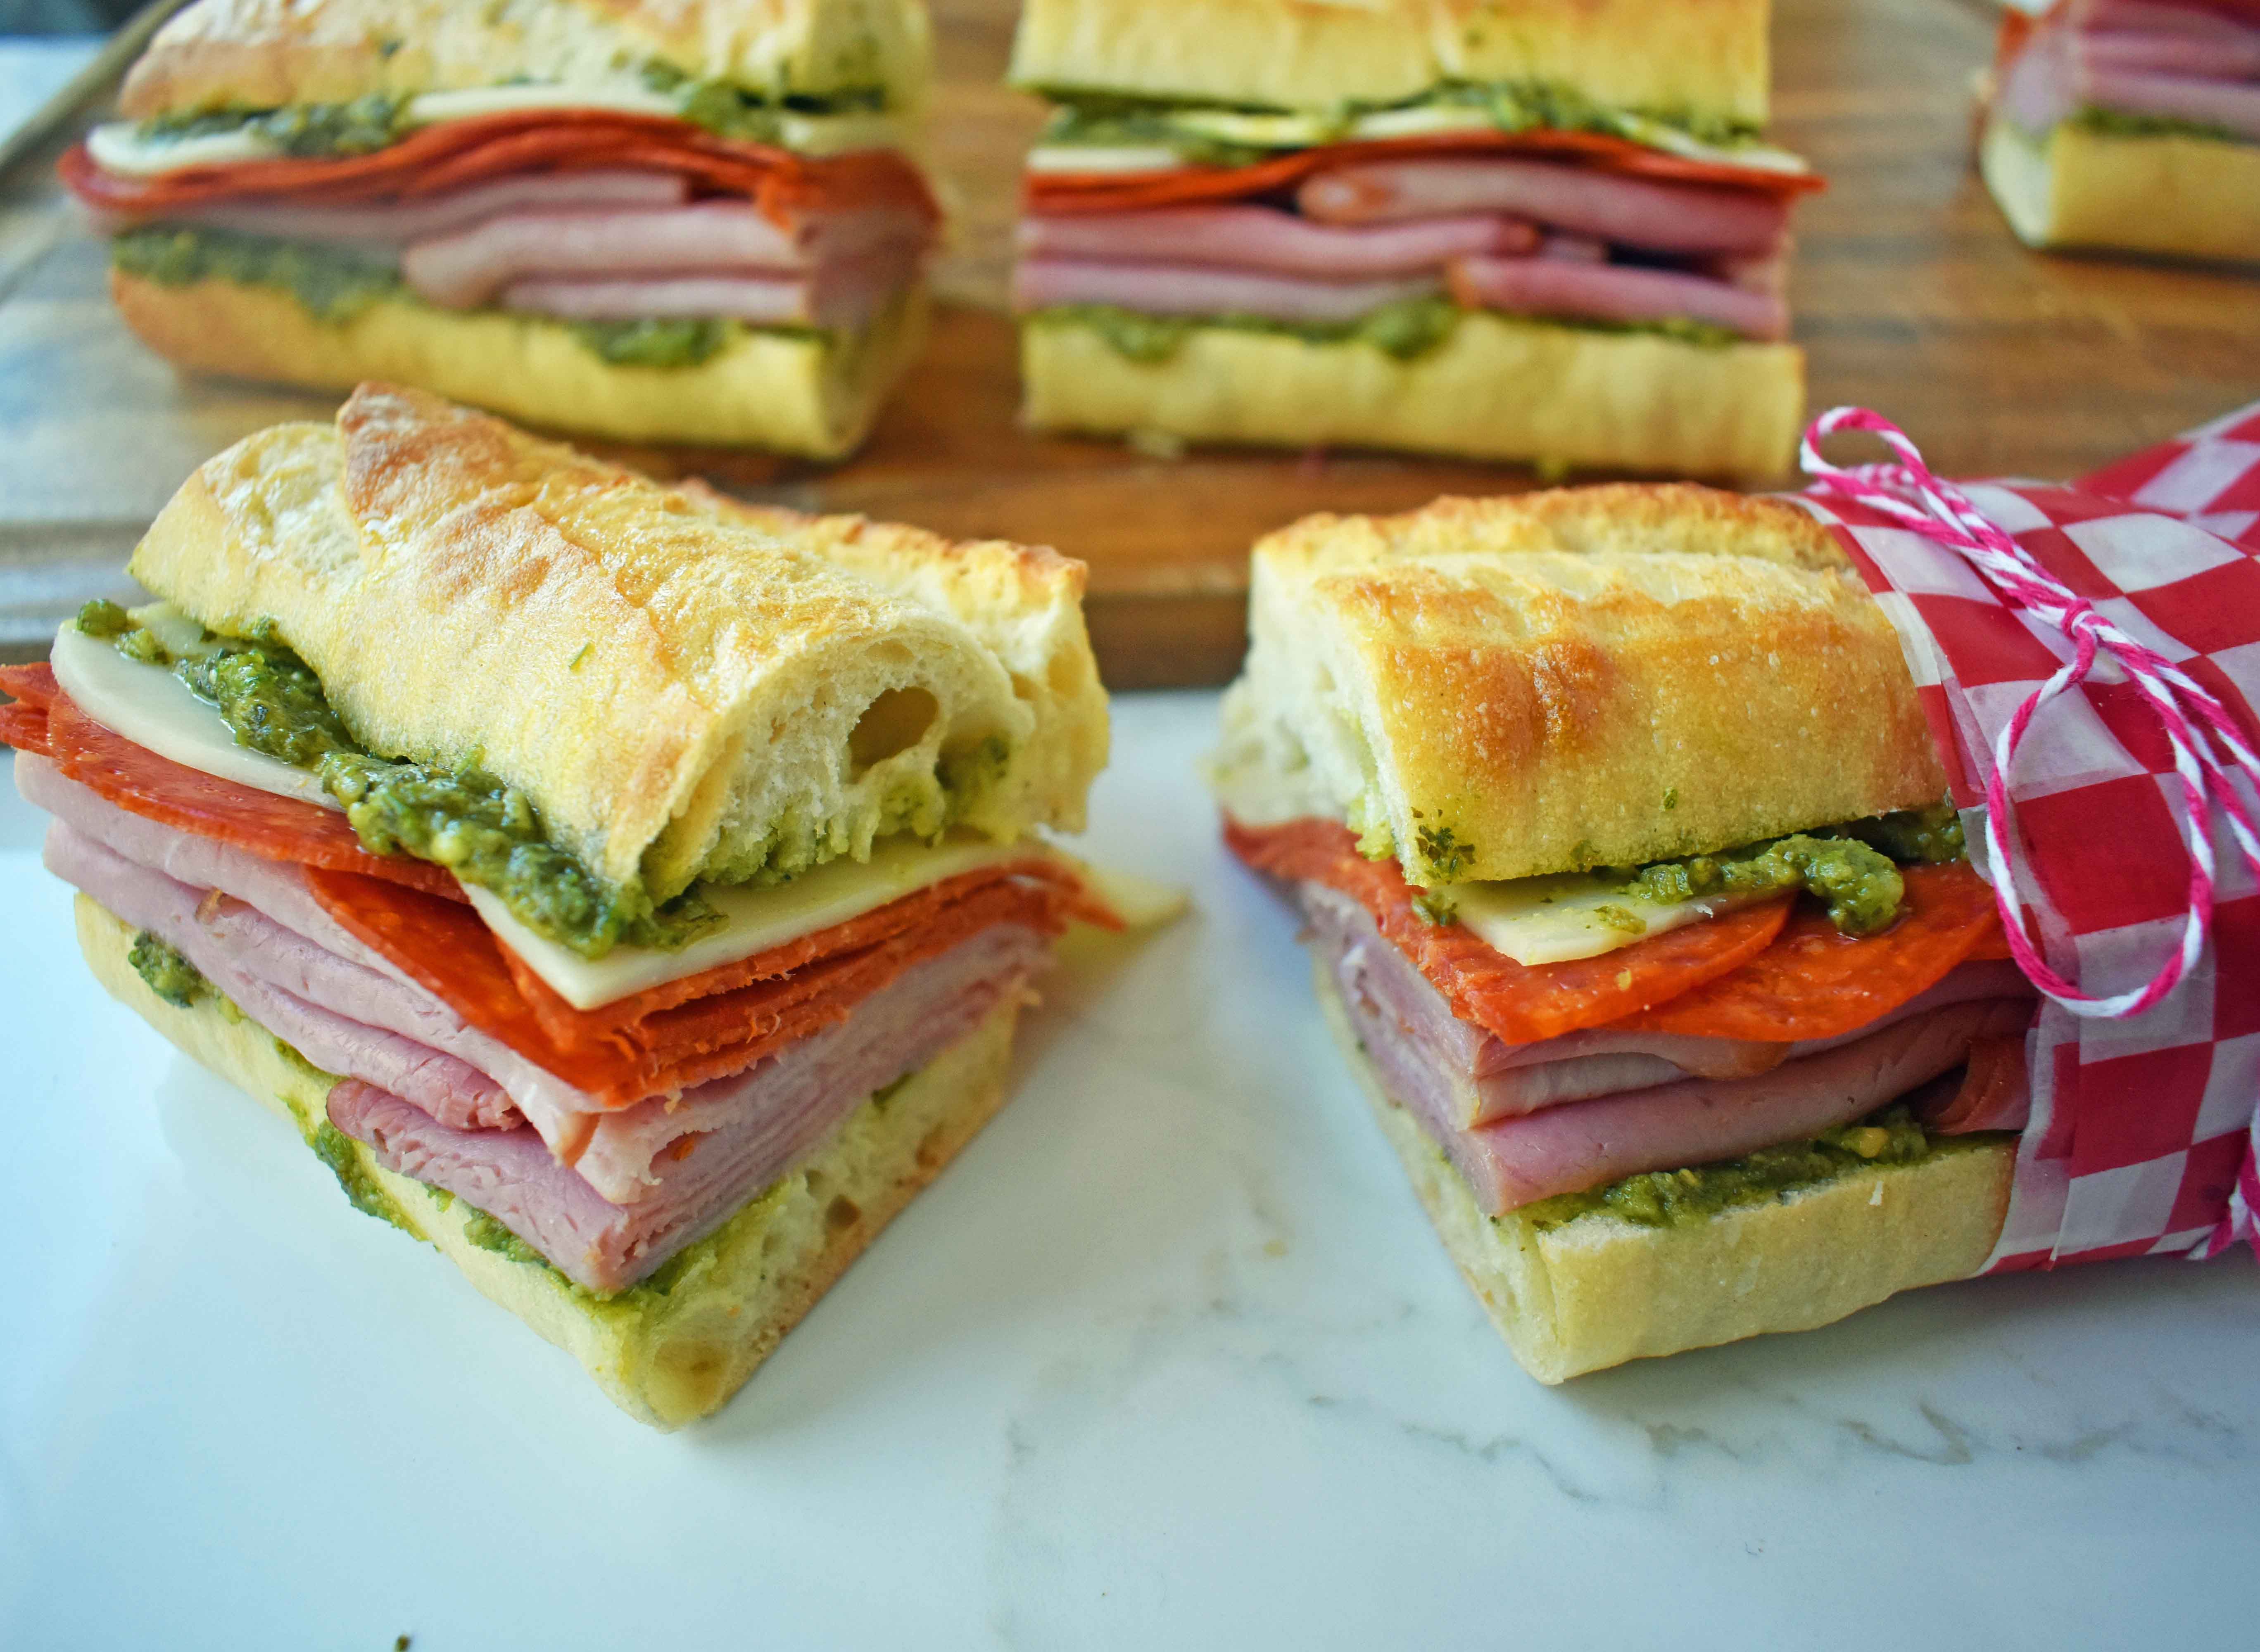 French Sandwich Rolls